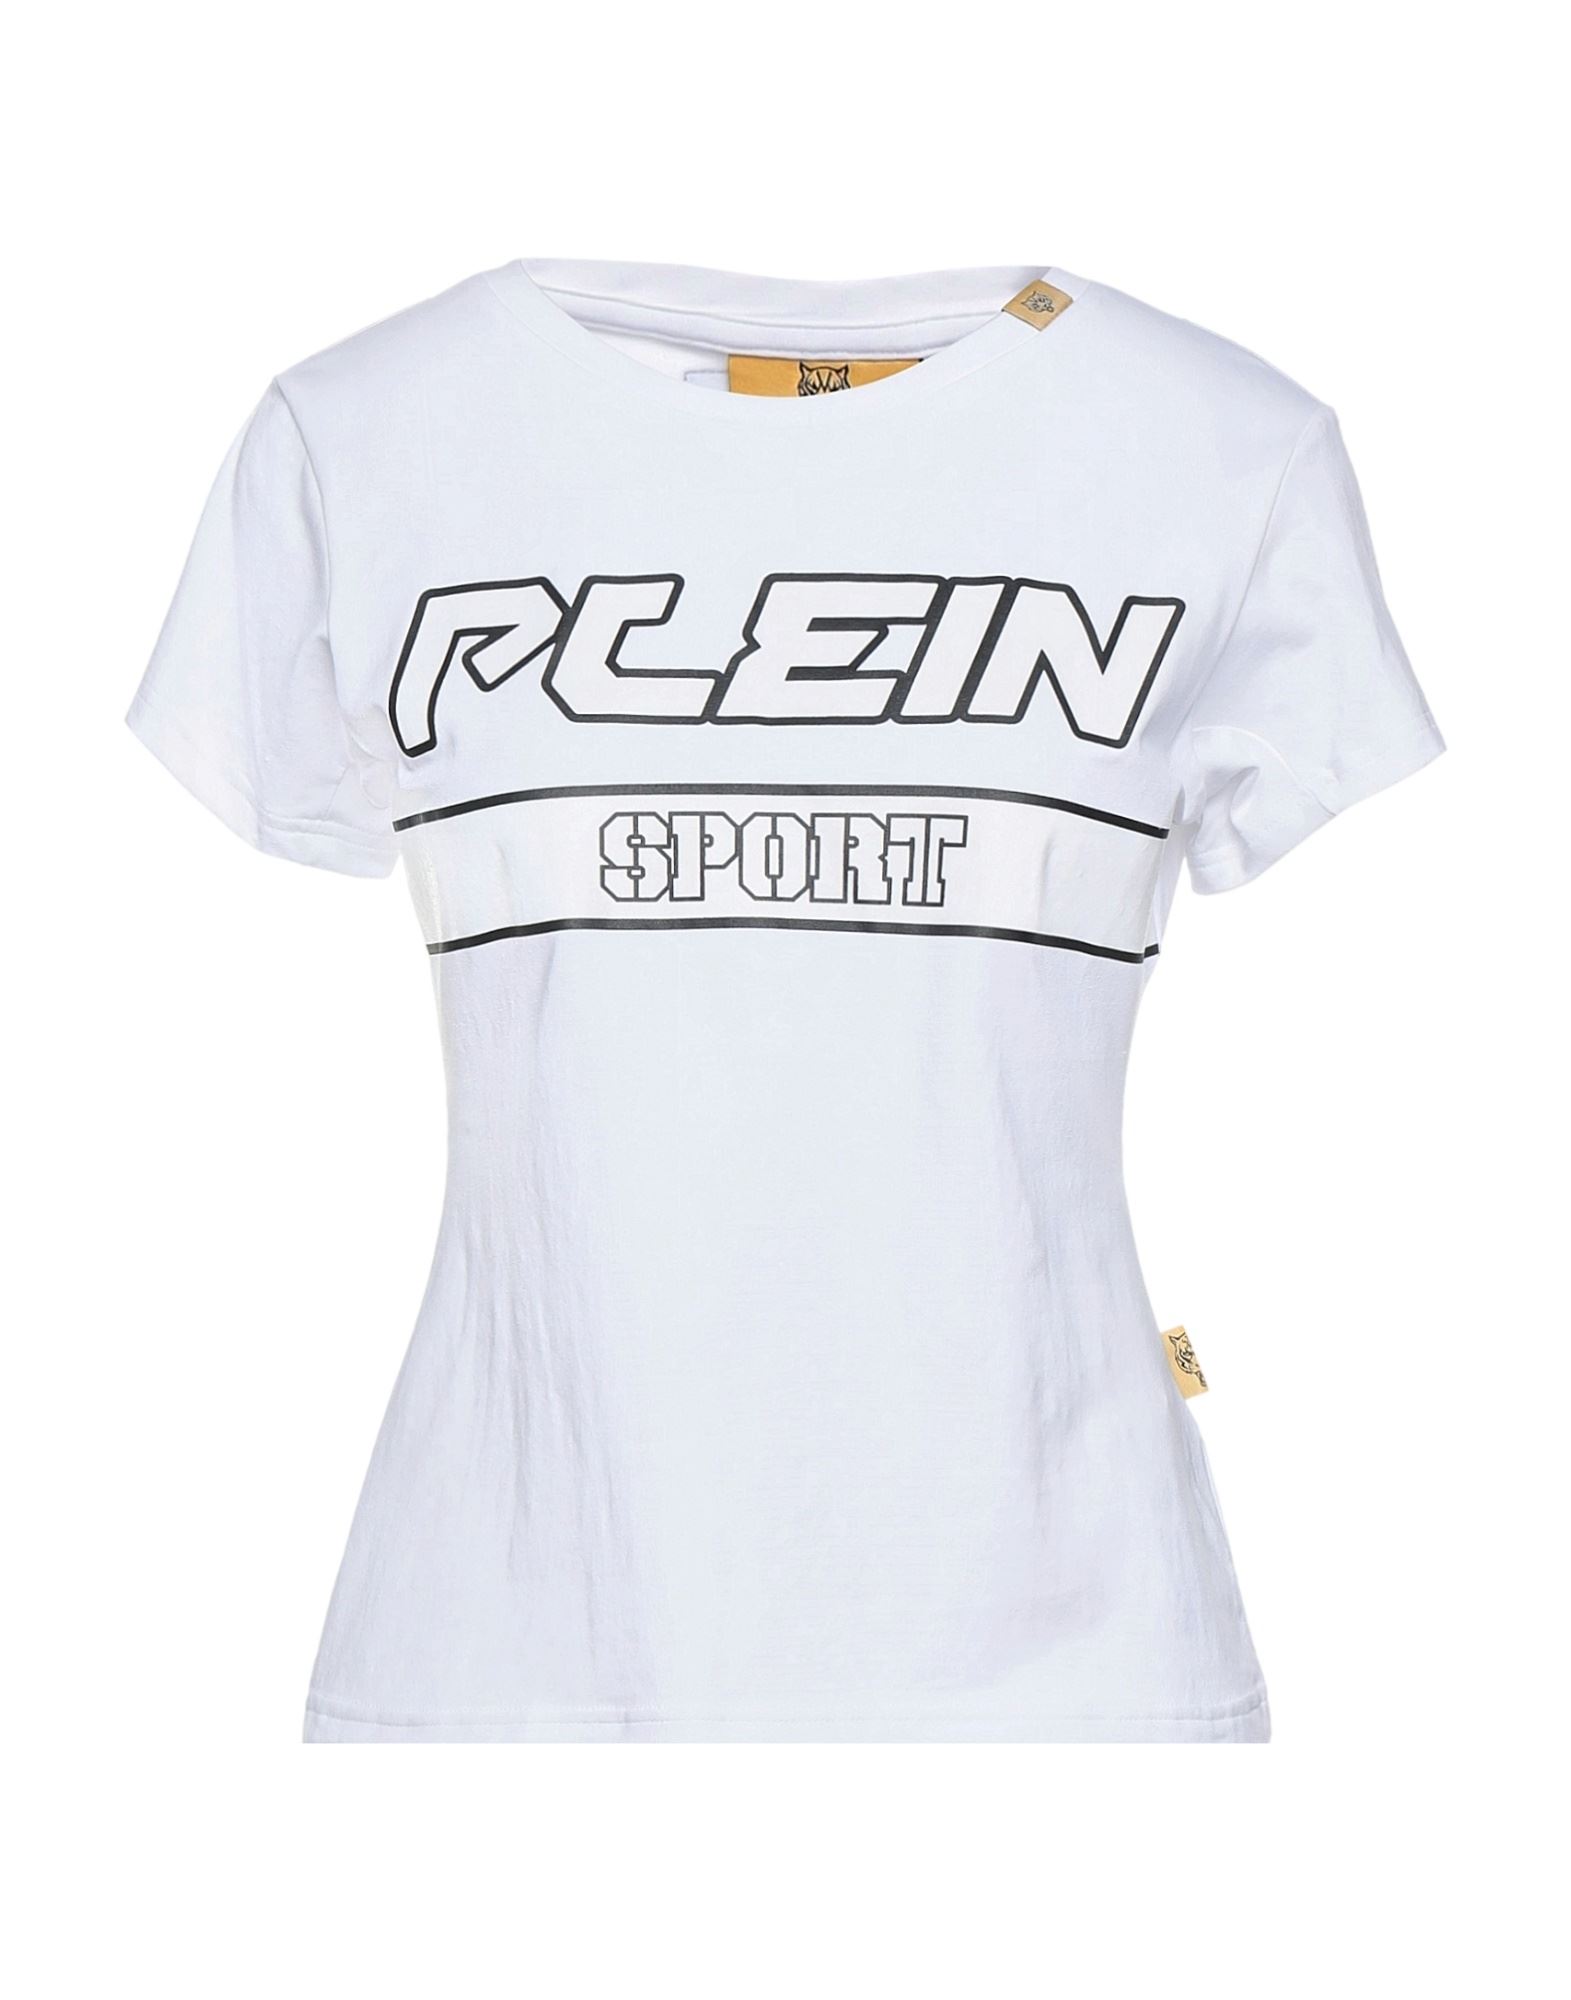 PLEIN SPORT T-shirts Damen Weiß von PLEIN SPORT